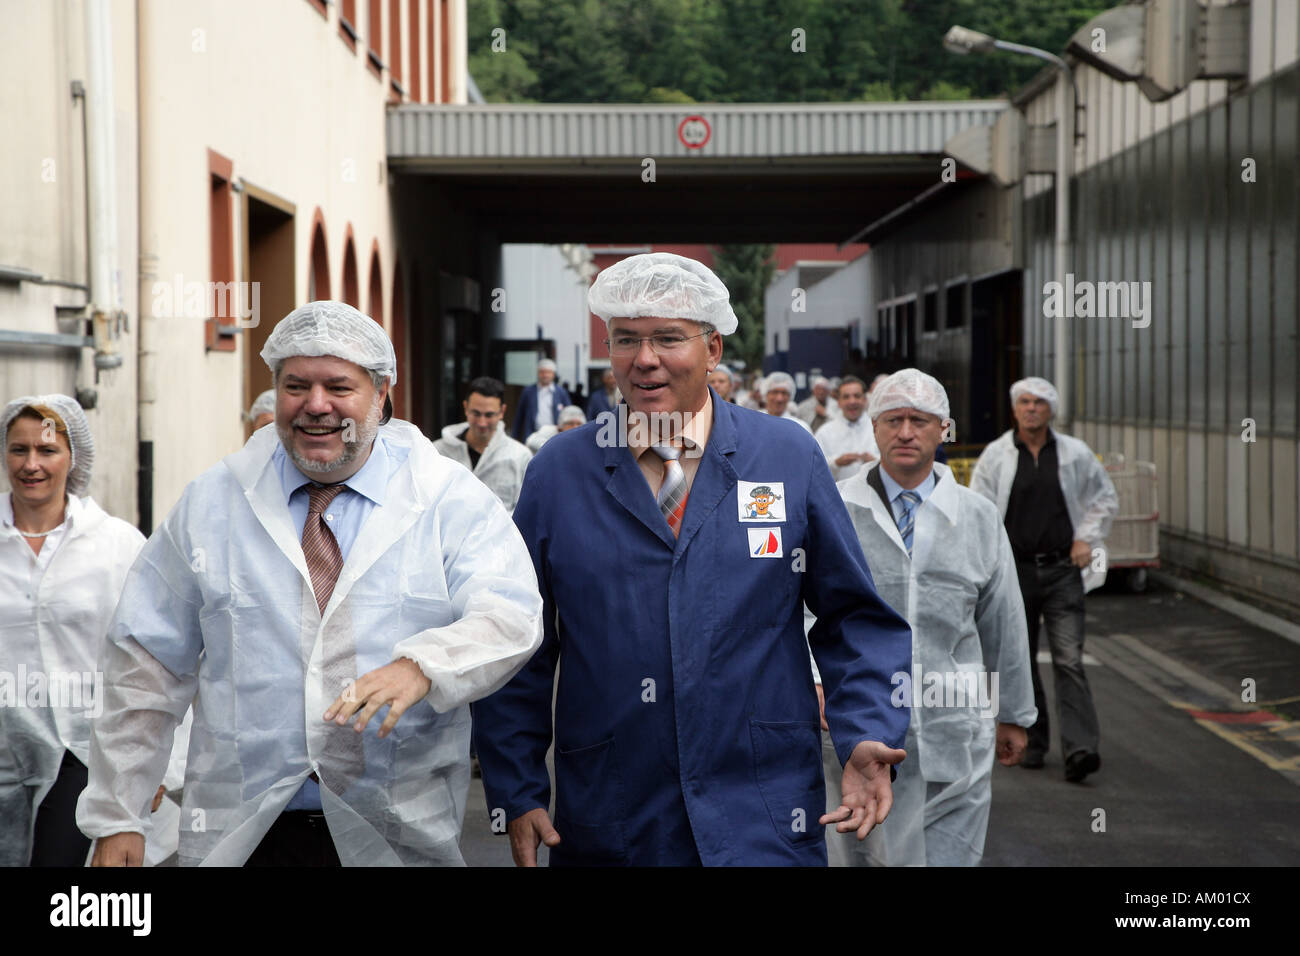 Ministerpräsident von Rheinland-Pfalz Kurt Beck besucht den Verpackung Hersteller Huhtamaki in Alf, Rheinland-Pfalz, Deutschland Stockfoto